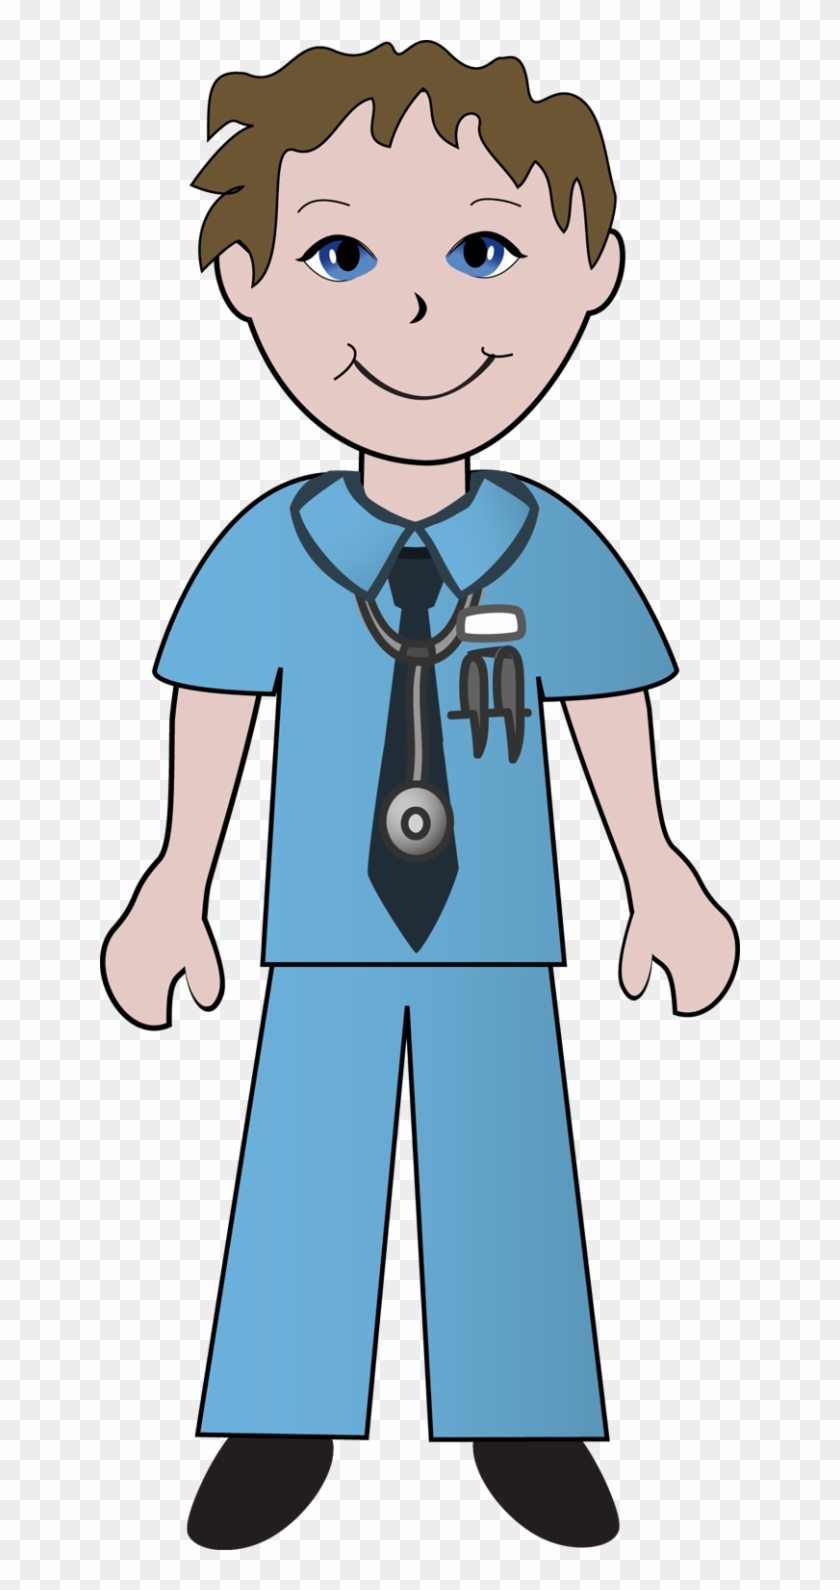 Free Clip Art School Nurse Clipart 3 Image - Male Nurse Clip Art #280651